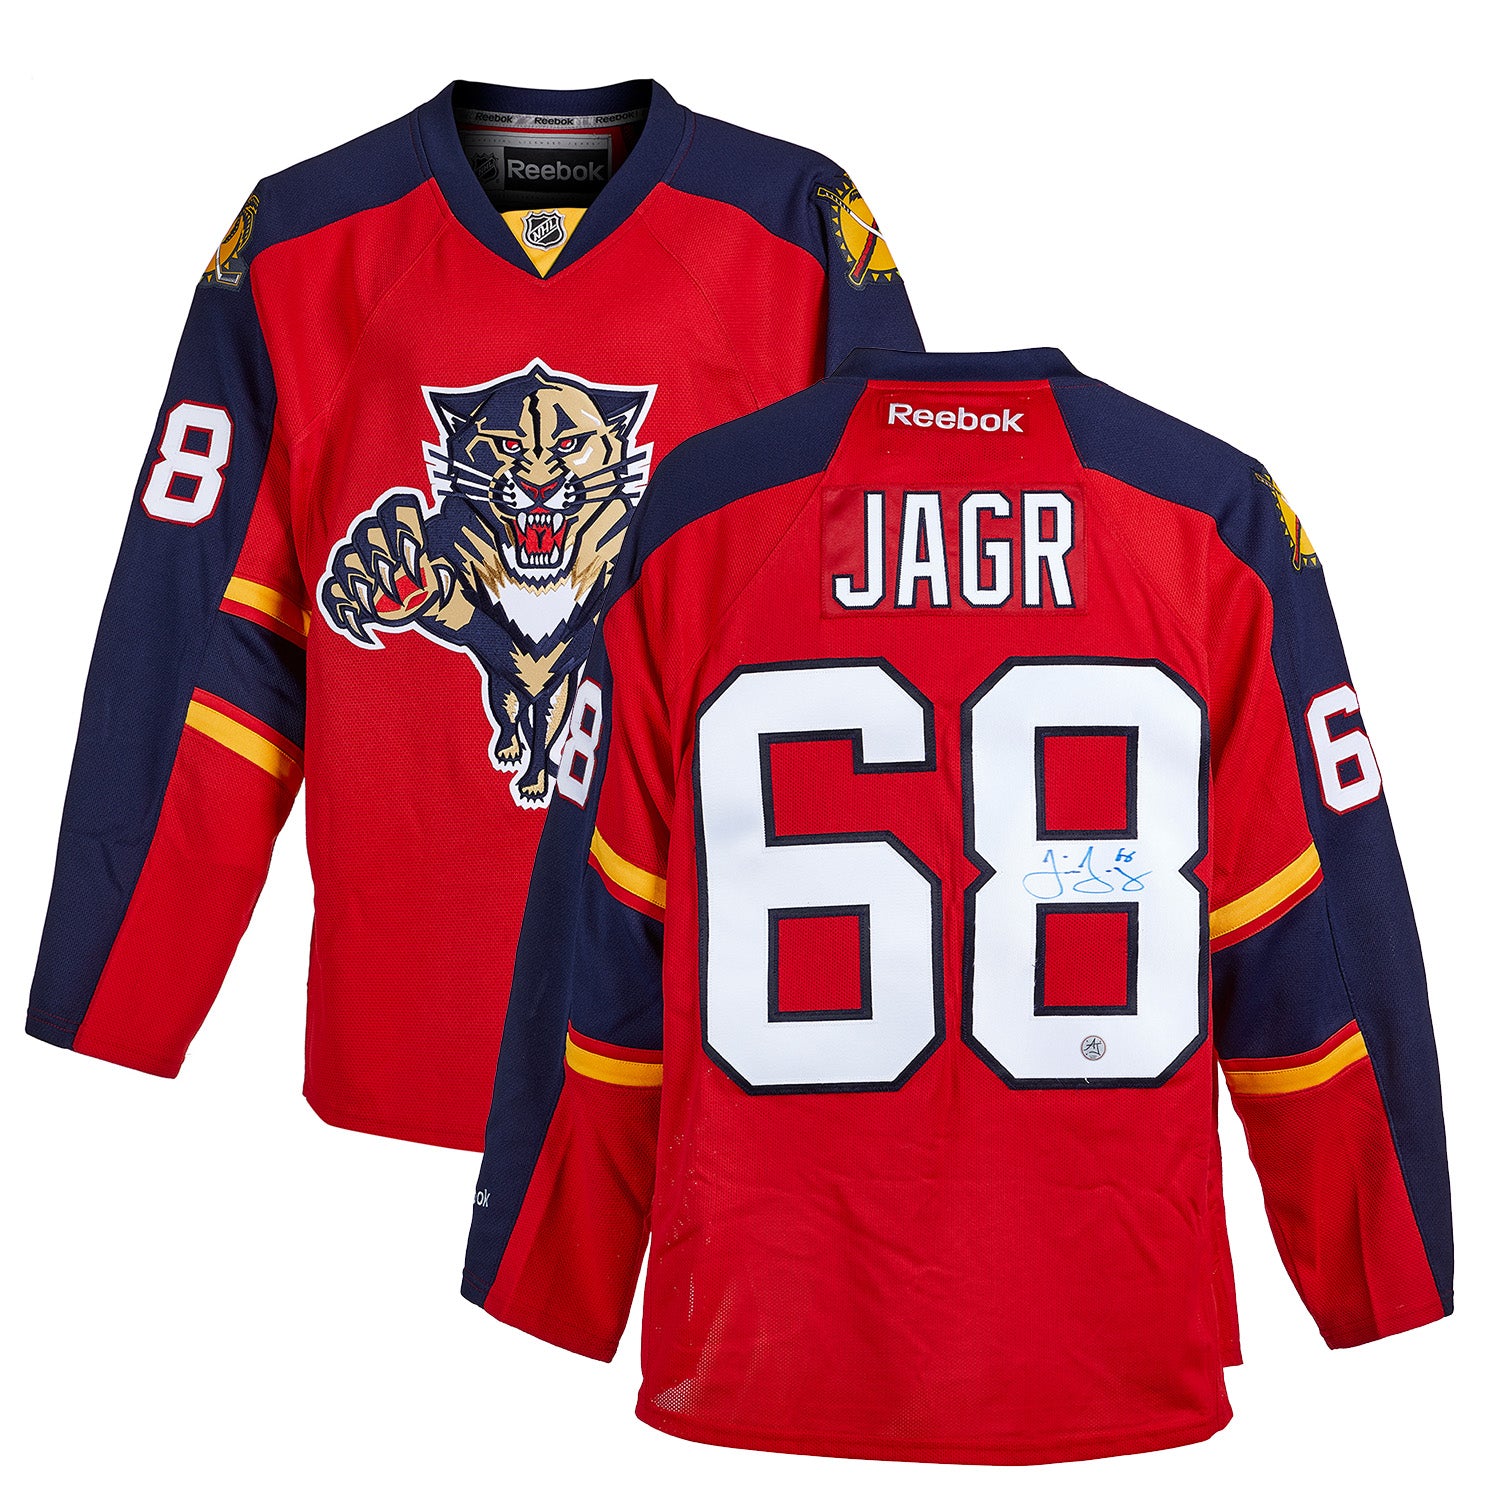 Jaromir Jagr Florida Panthers Autographed Reebok Jersey